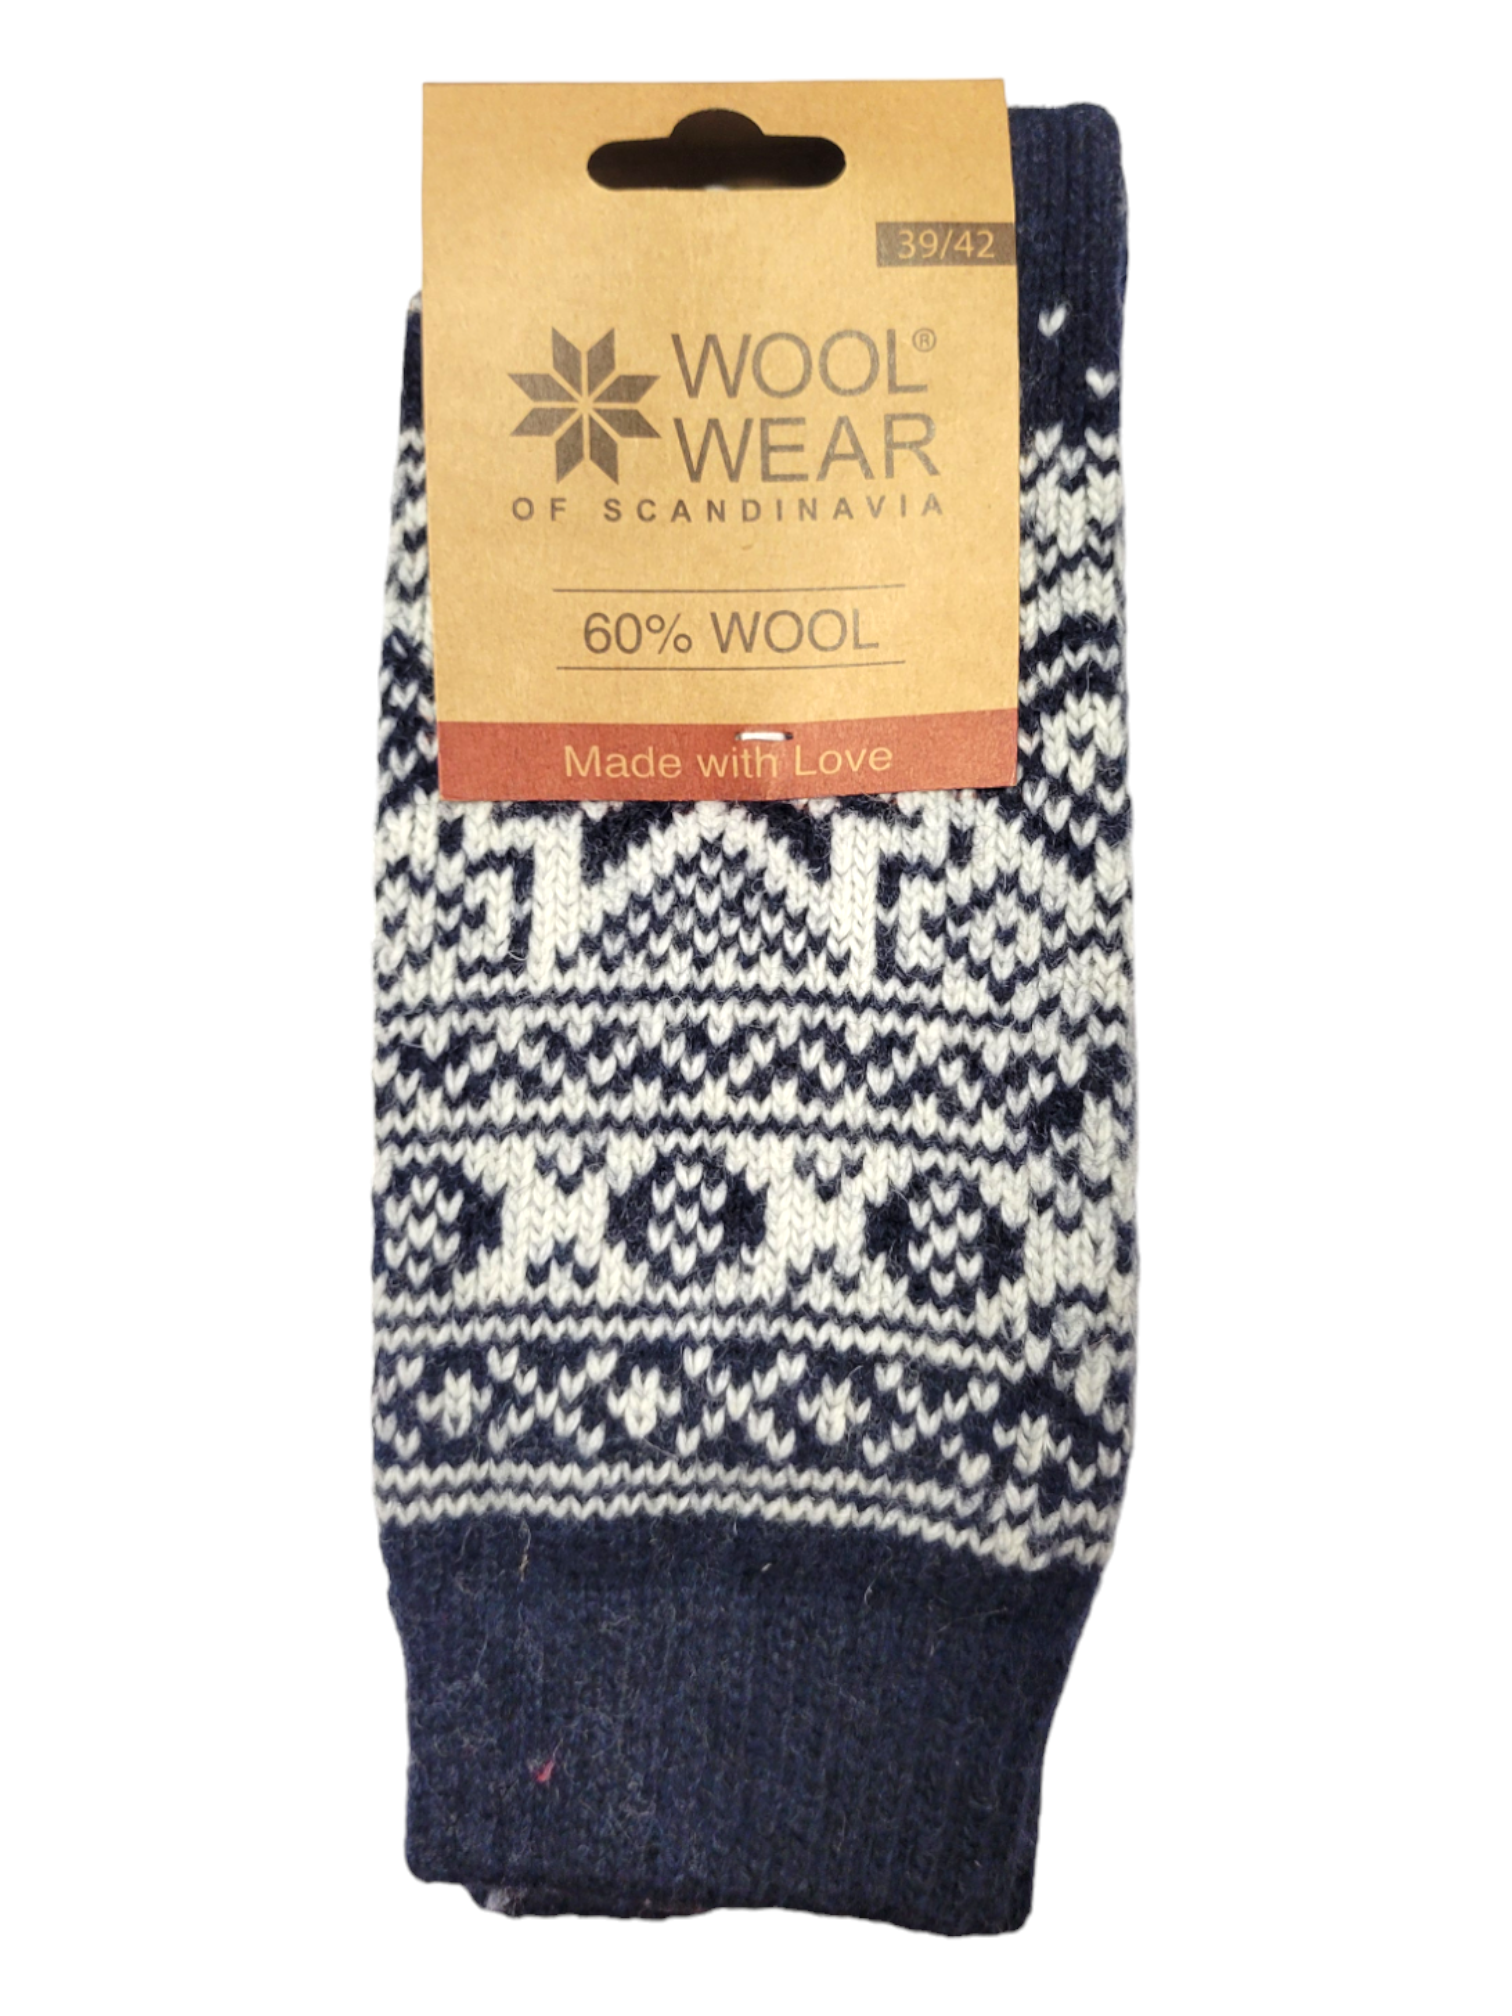 Socks: Wool Wear - Navy w/ White Pattern, Selbu Star, 60% Wool